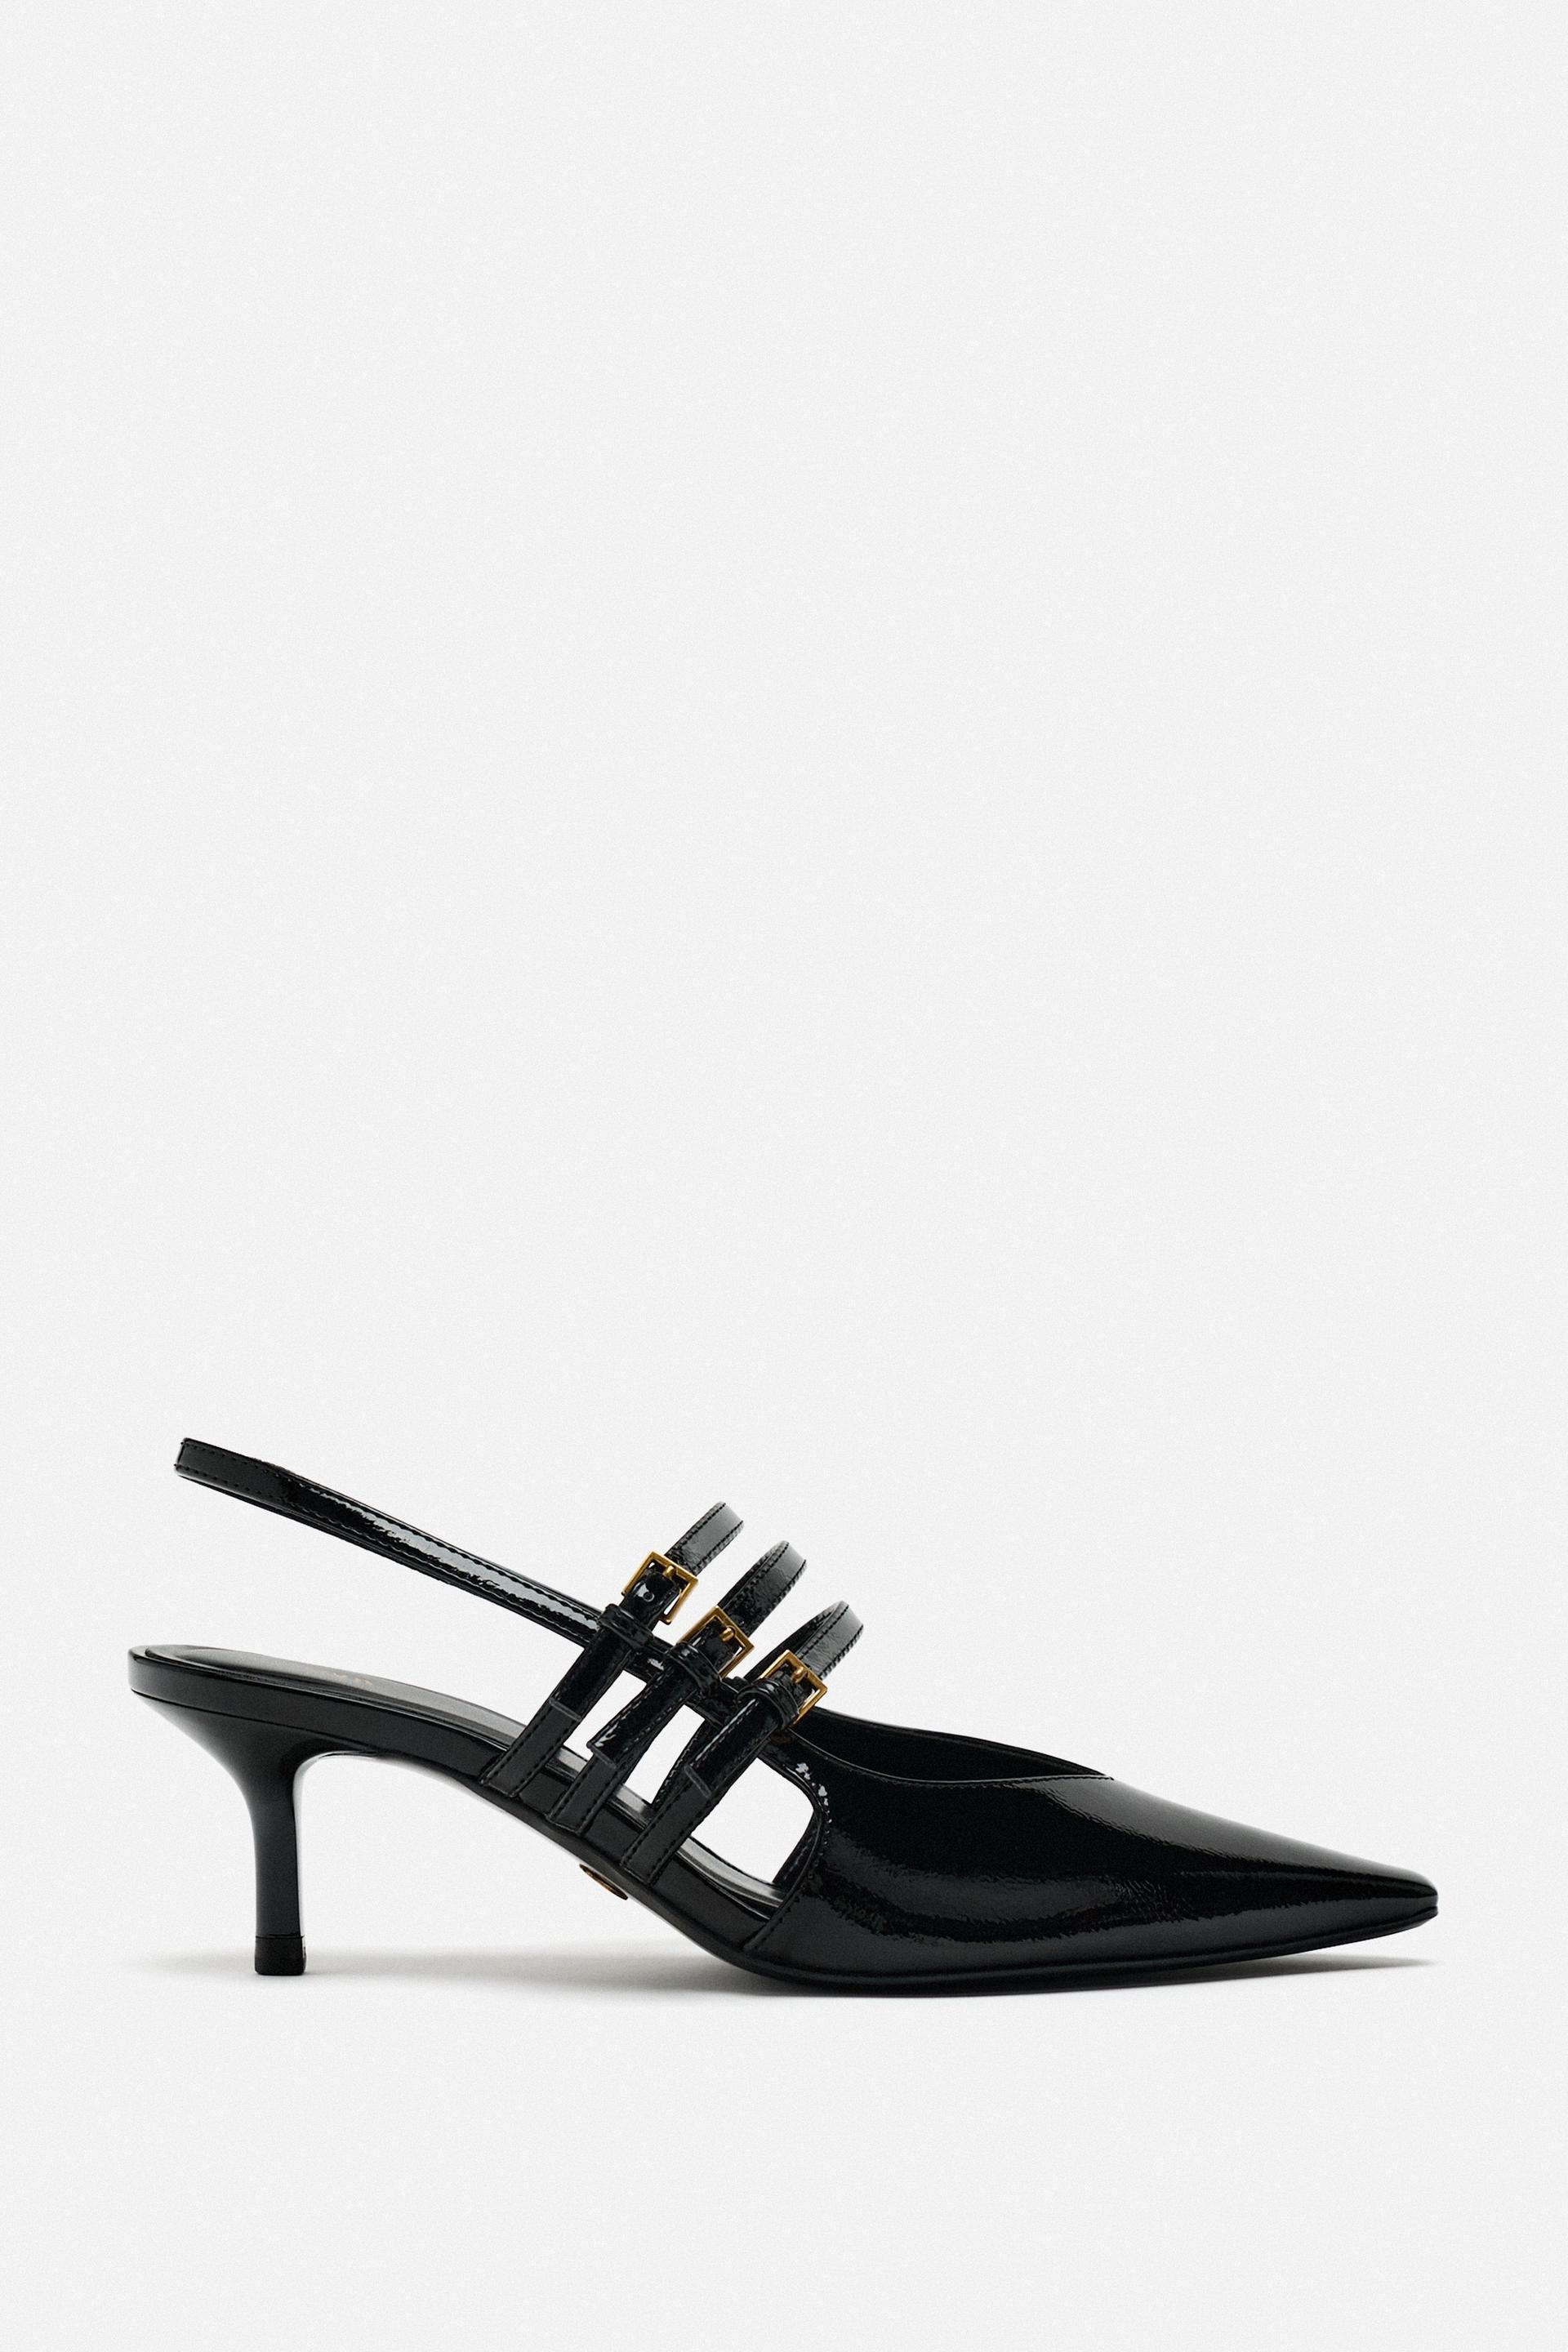 El tacn en tendencia: los zapatos kitten heel con tiras ms bonitos de Zara